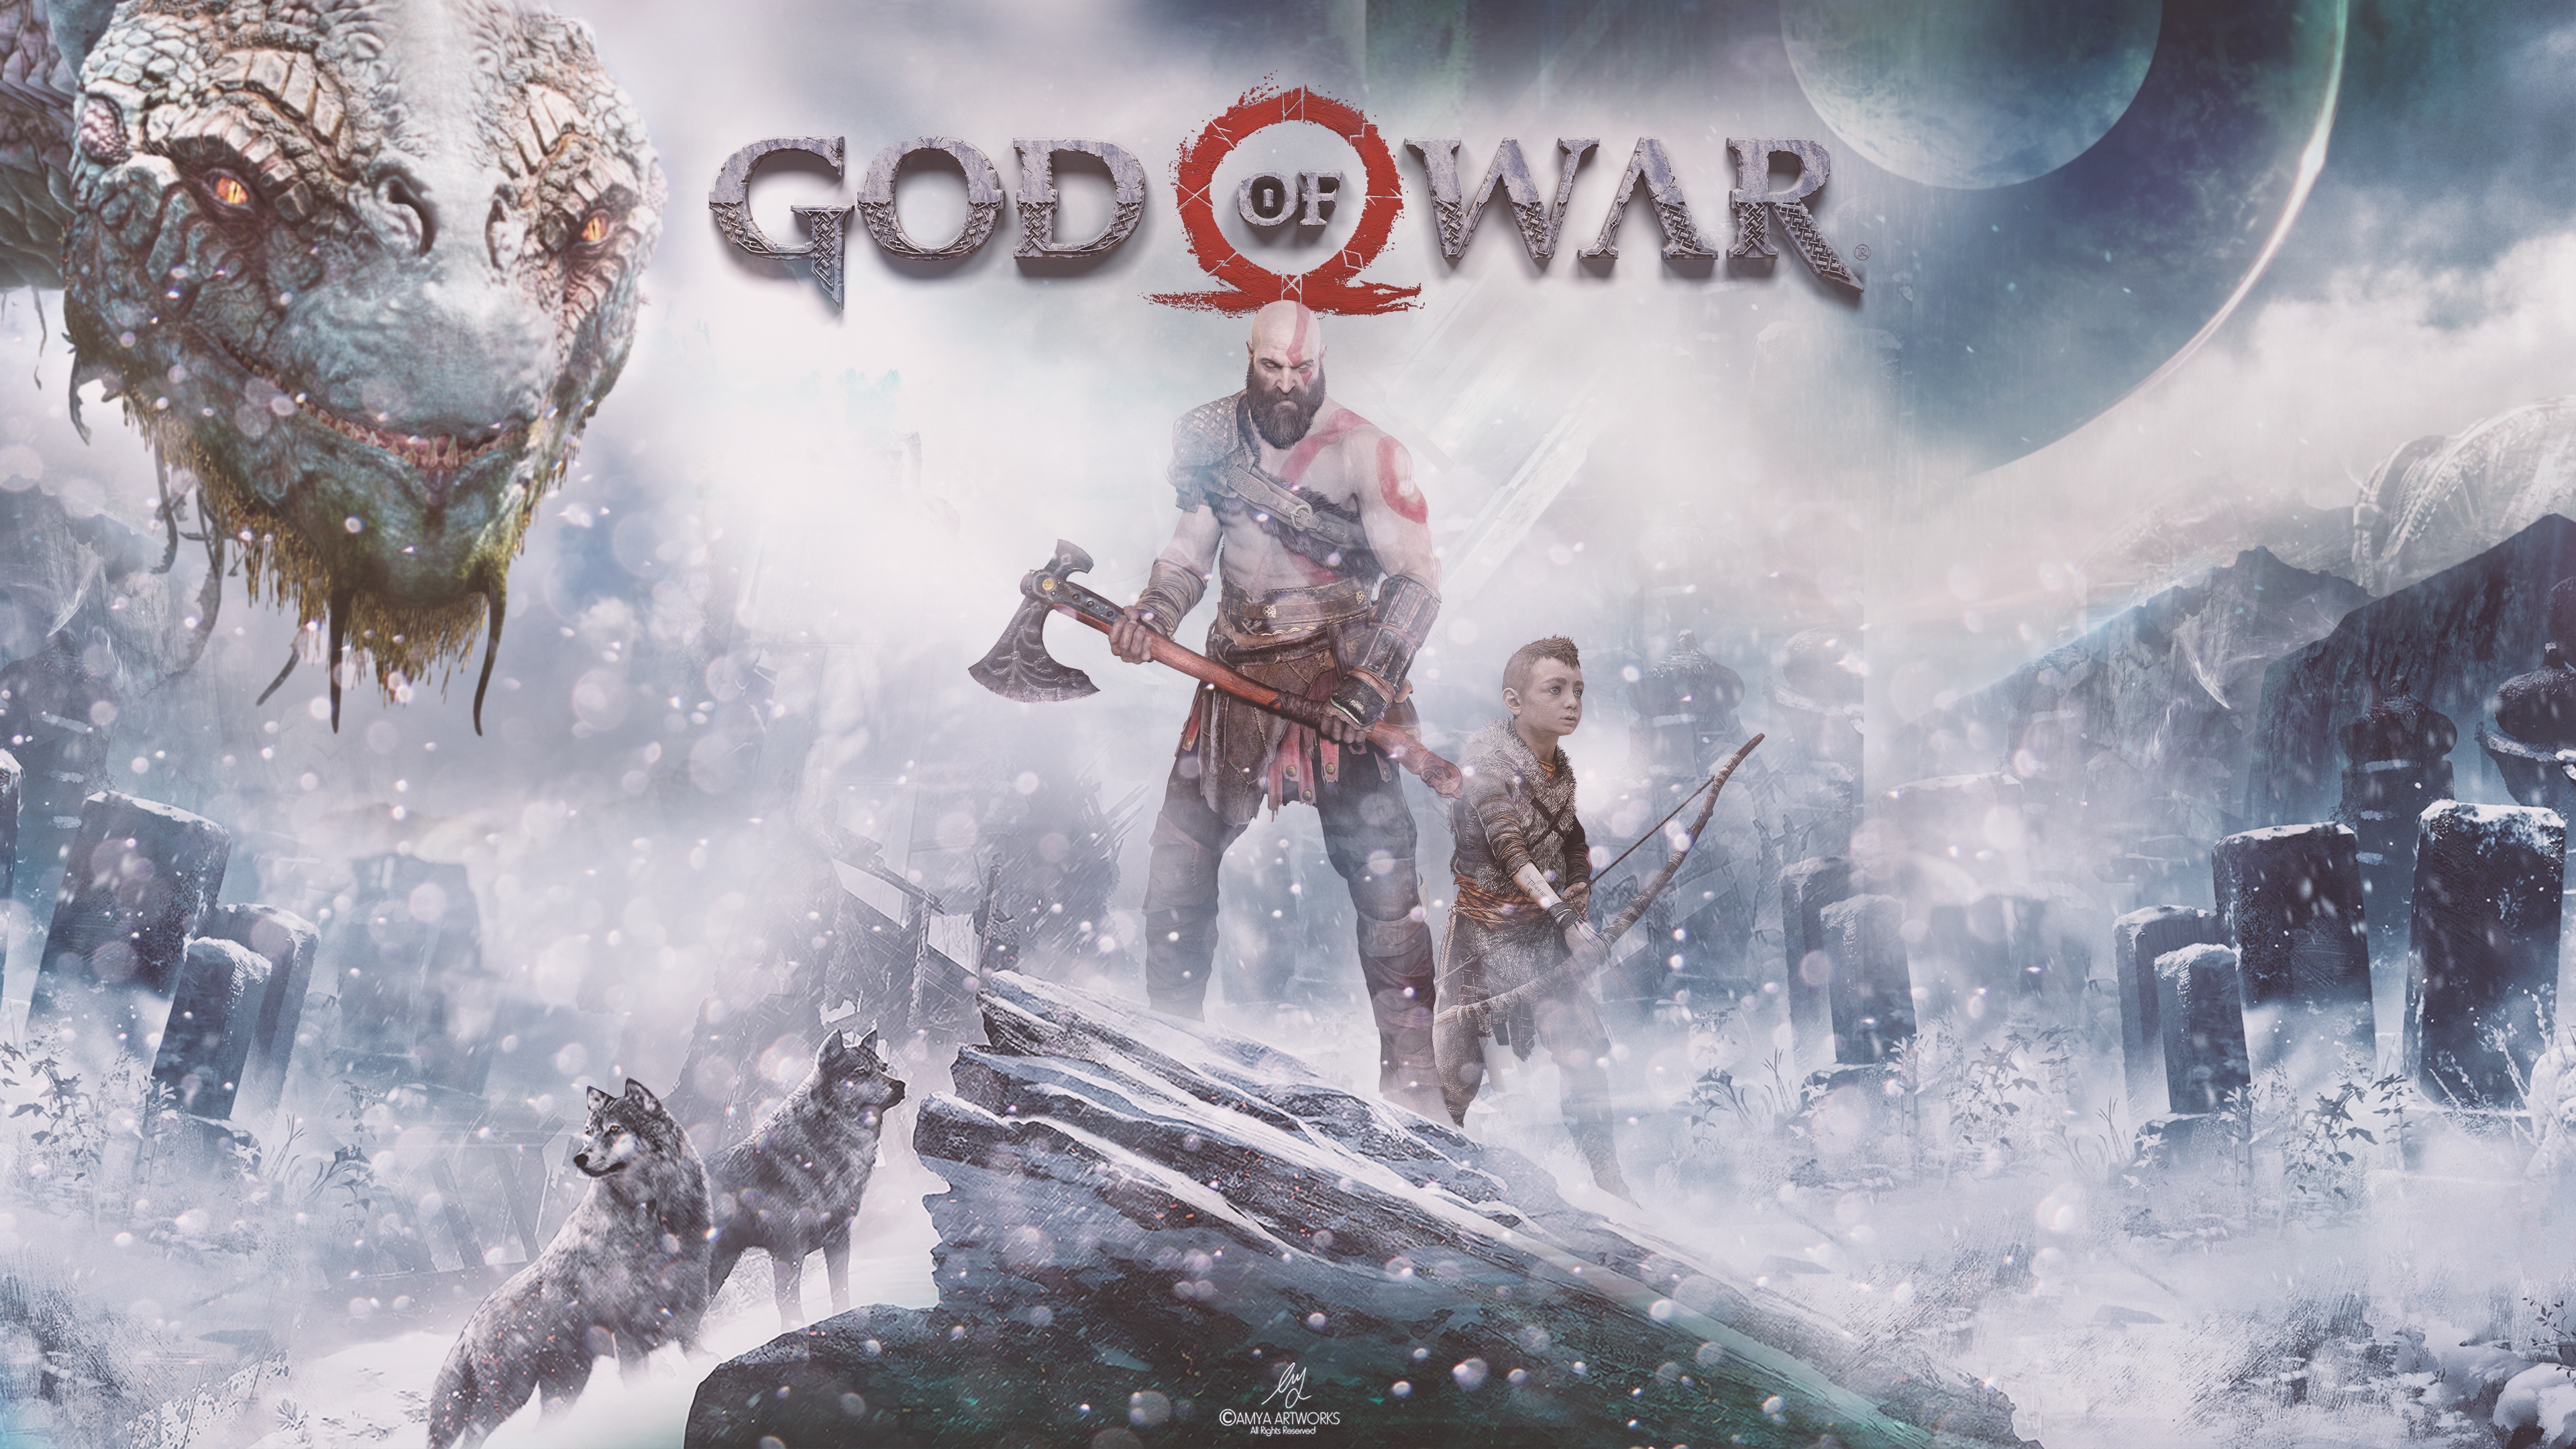 sea monster, kratos (god of war), god of war, video game, god of war (2018), archer, atreus (god of war), axe, bald, wolf